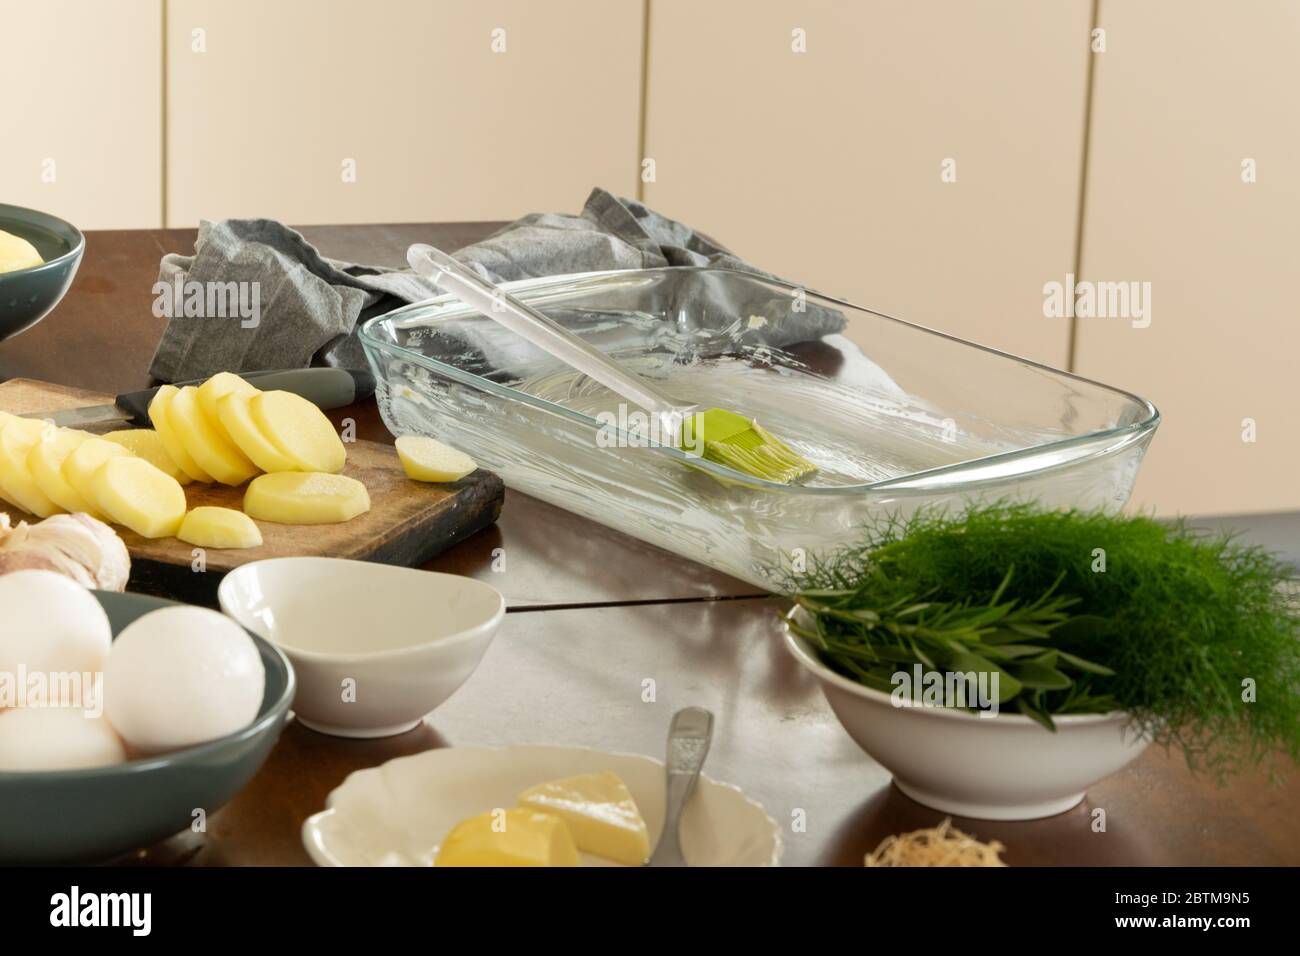 Cucina casalinga, preparazione di cibo con ingredienti sani Foto Stock